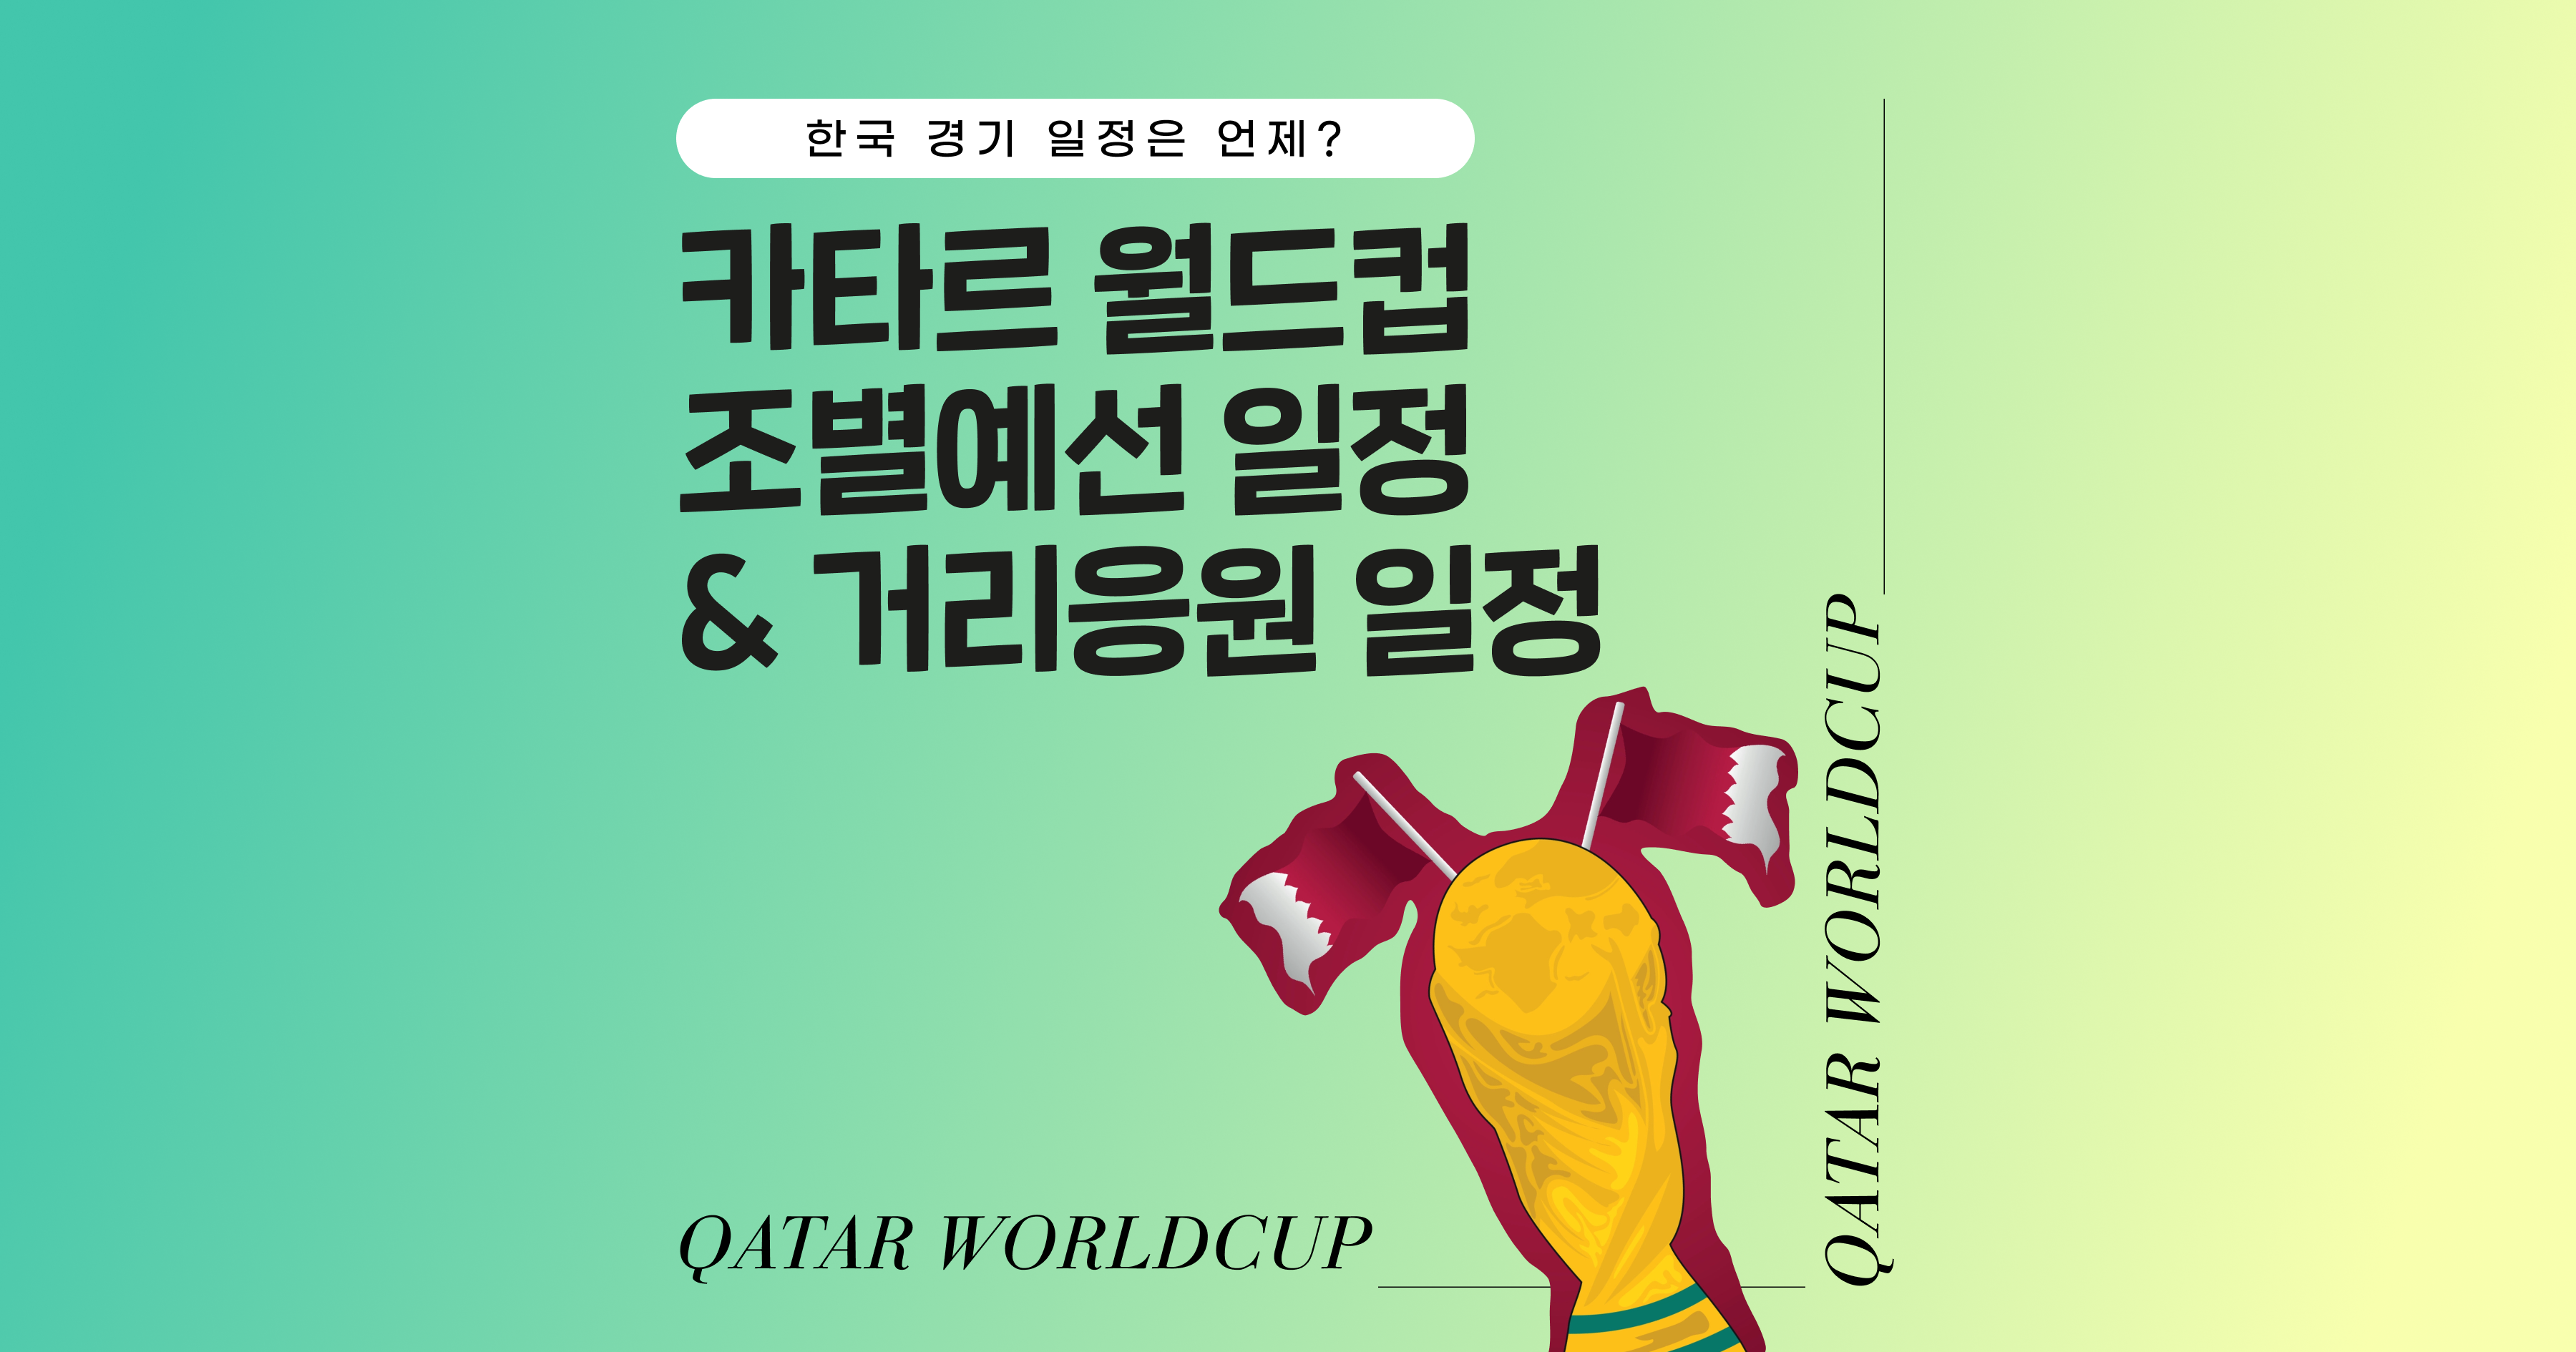 카타르 월드컵 조별예선 일정 및 한국 경기 일정&#44; 광화문 광장 거리응원 일정 총 정리